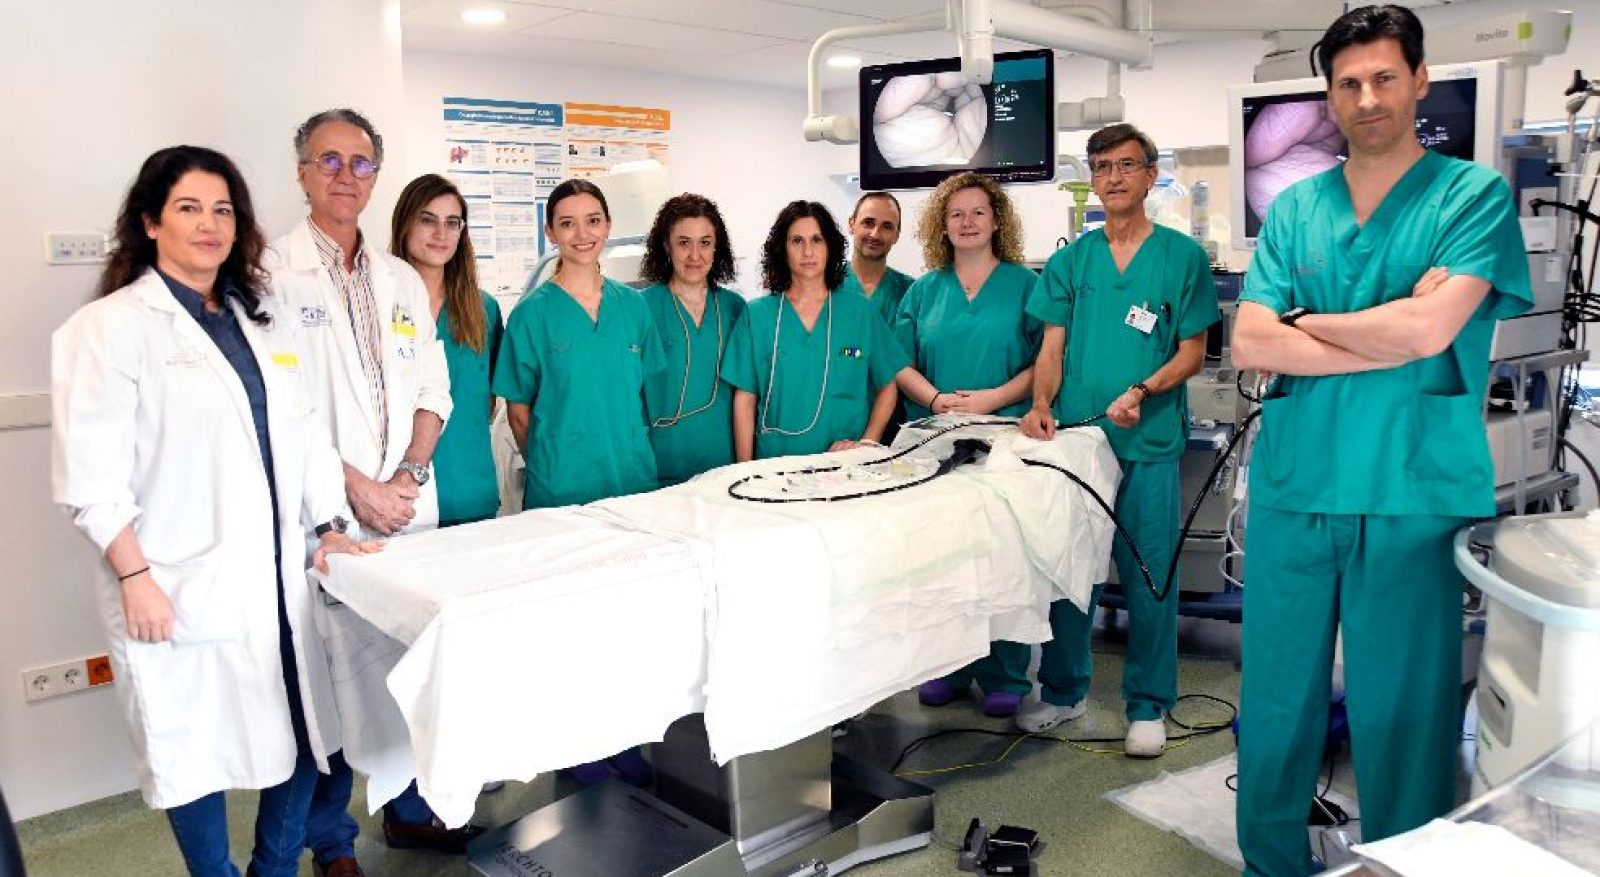 Estrenamos laUnidad de Endoscopias del Hospital Morales Meseguer